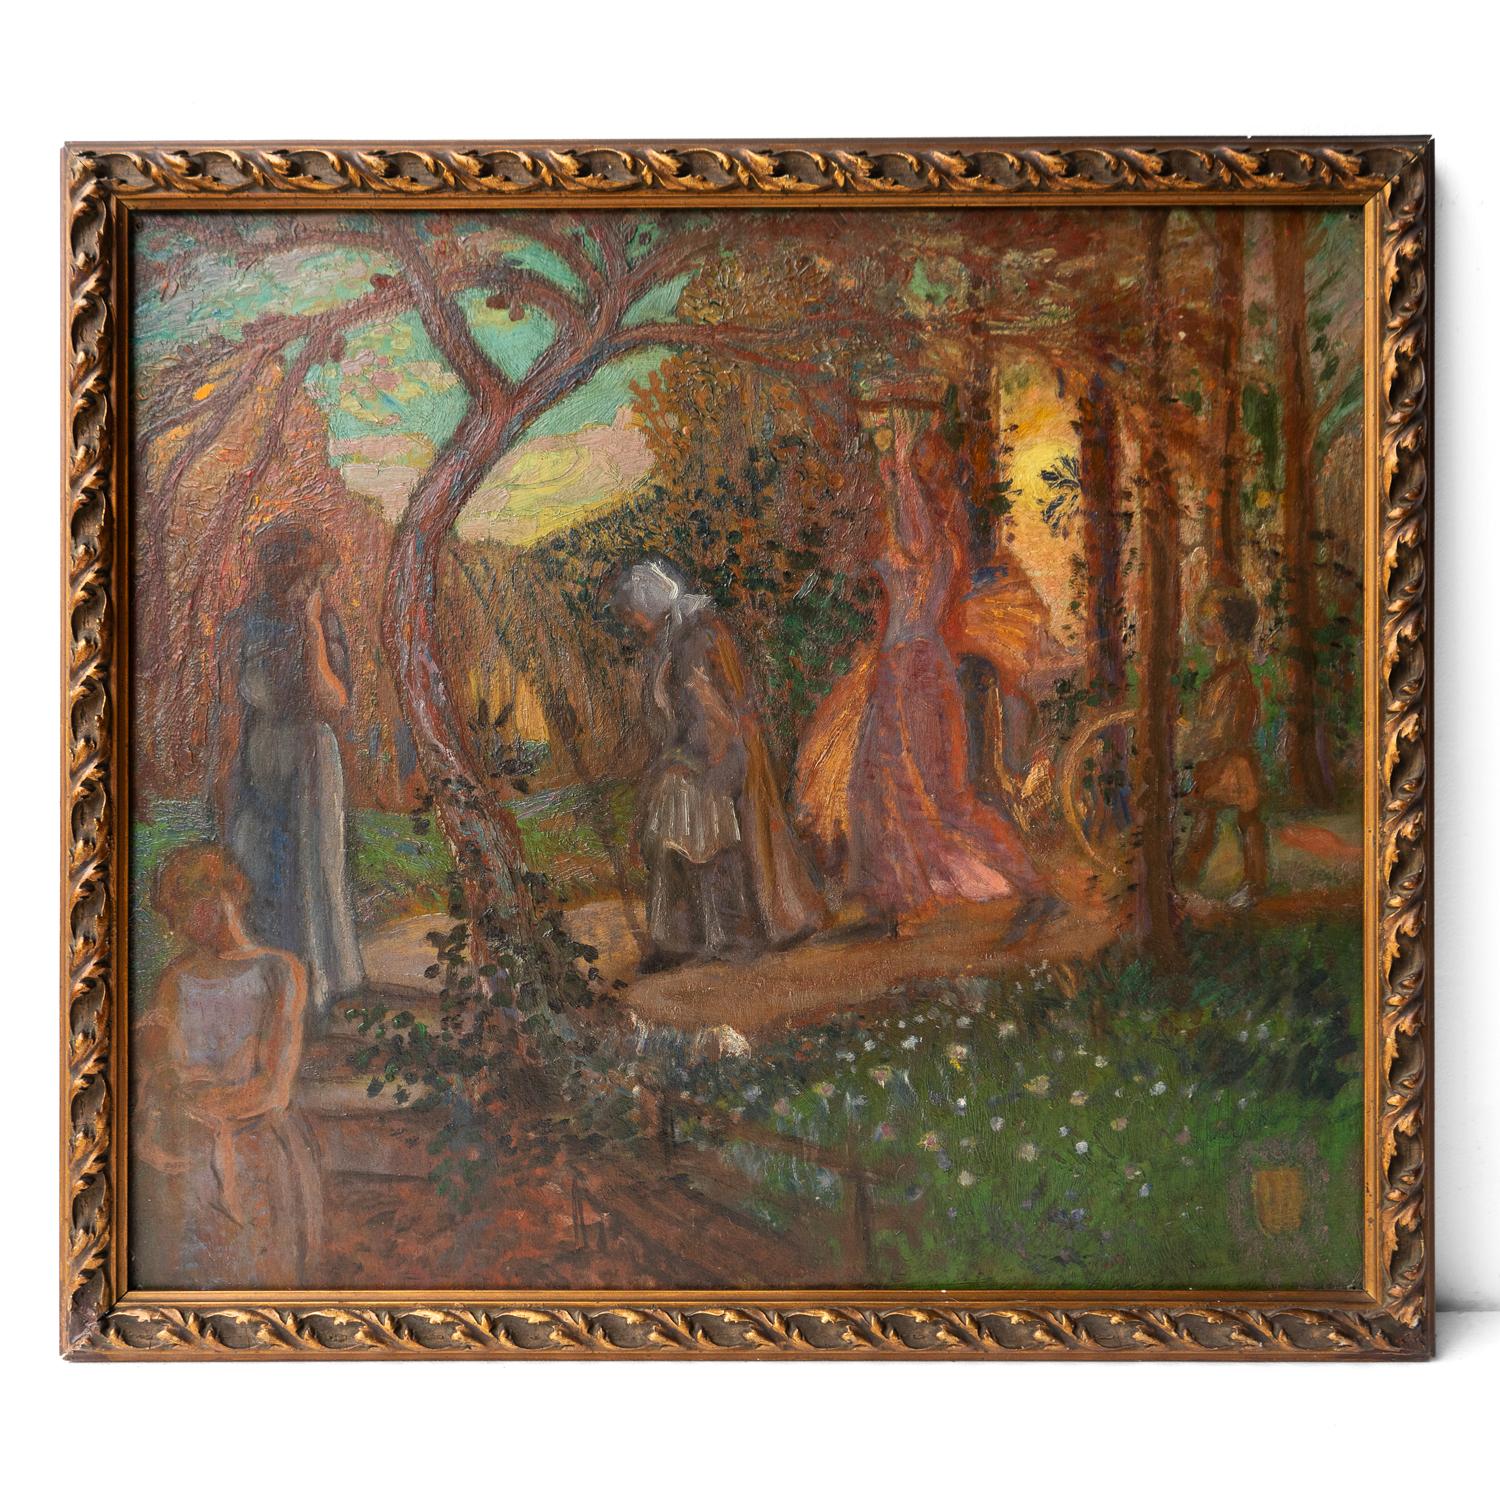 Peinture ancienne à l'huile sur carton de James Joshua Guthrie (1874-1952).

Une image extrêmement romantique représentant plusieurs personnages d'âges différents marchant sur un chemin à travers les bois au coucher du soleil. Probablement à